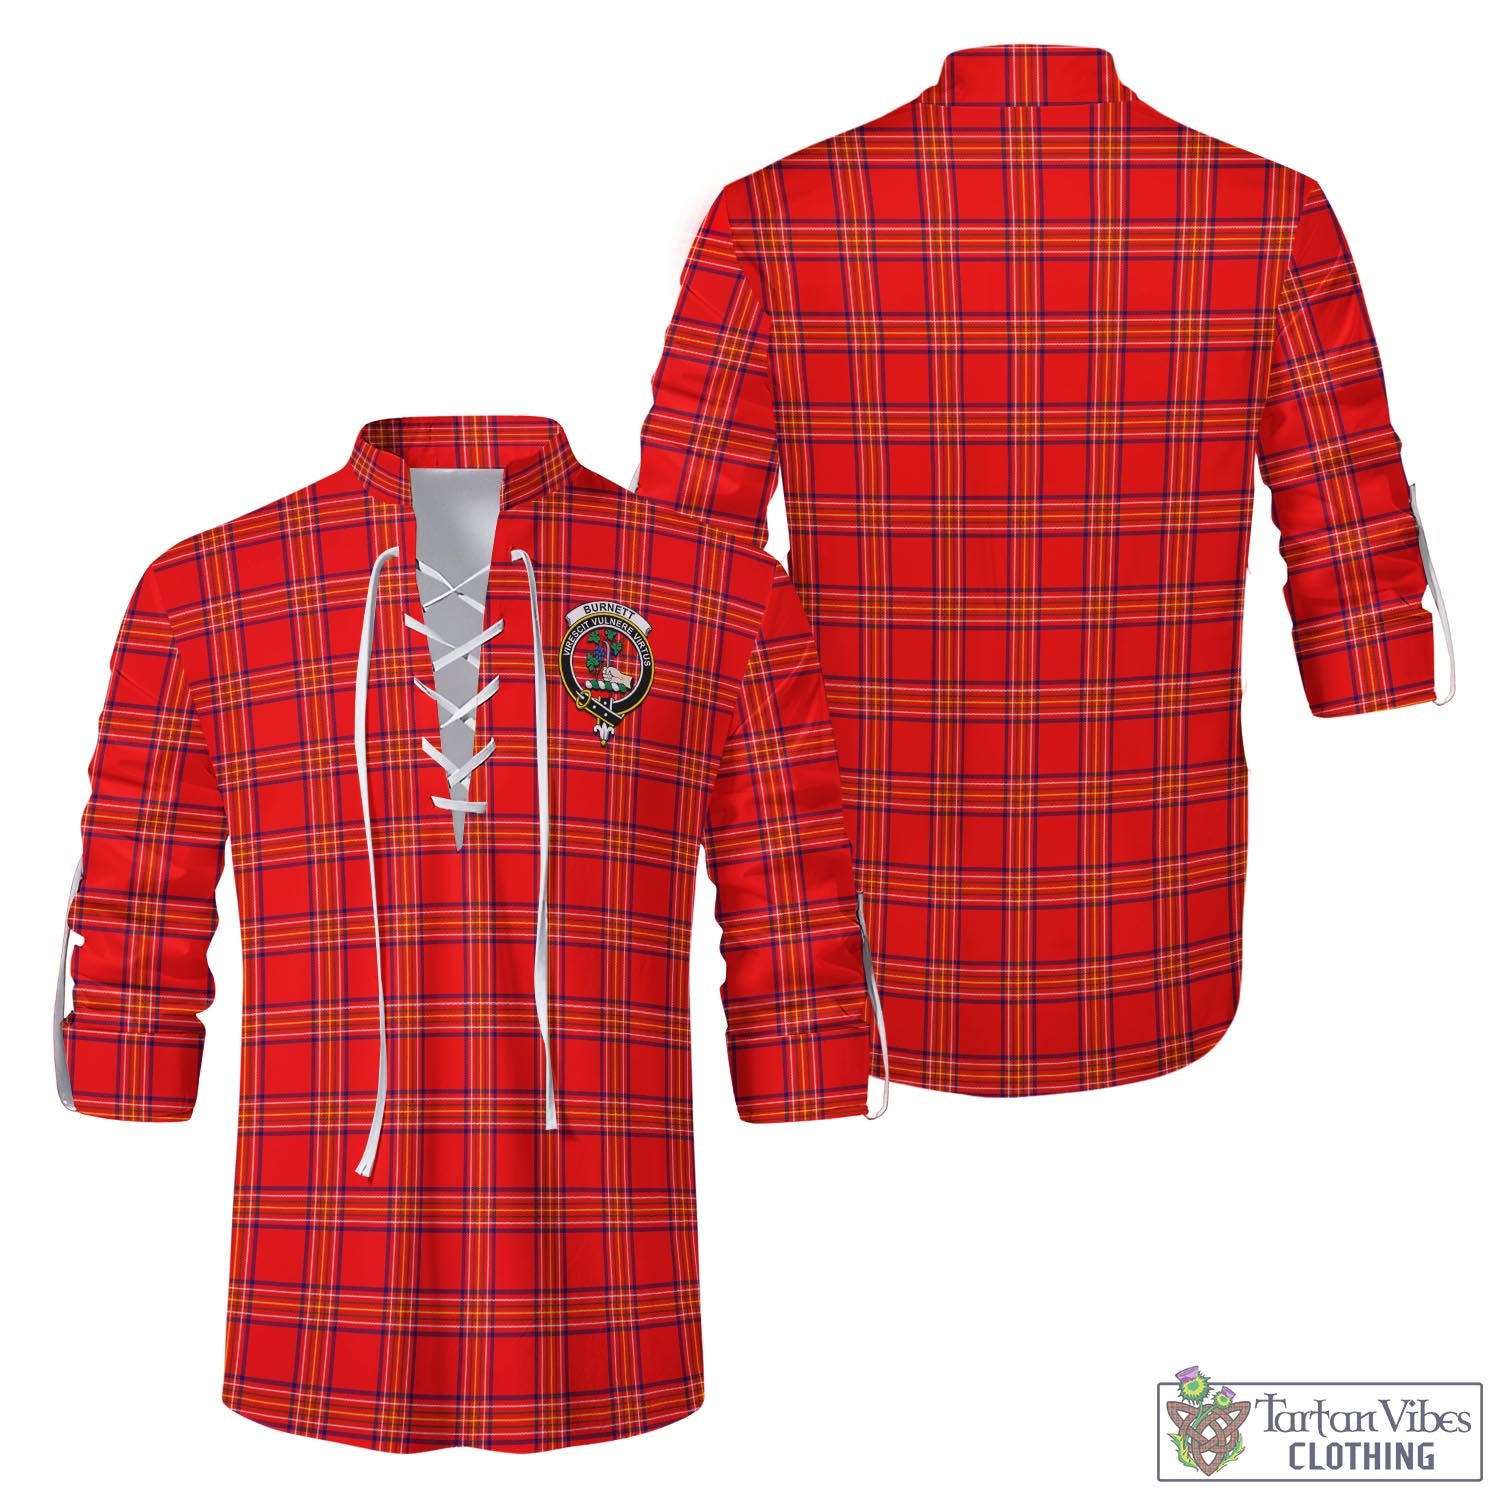 Tartan Vibes Clothing Burnett Modern Tartan Men's Scottish Traditional Jacobite Ghillie Kilt Shirt with Family Crest